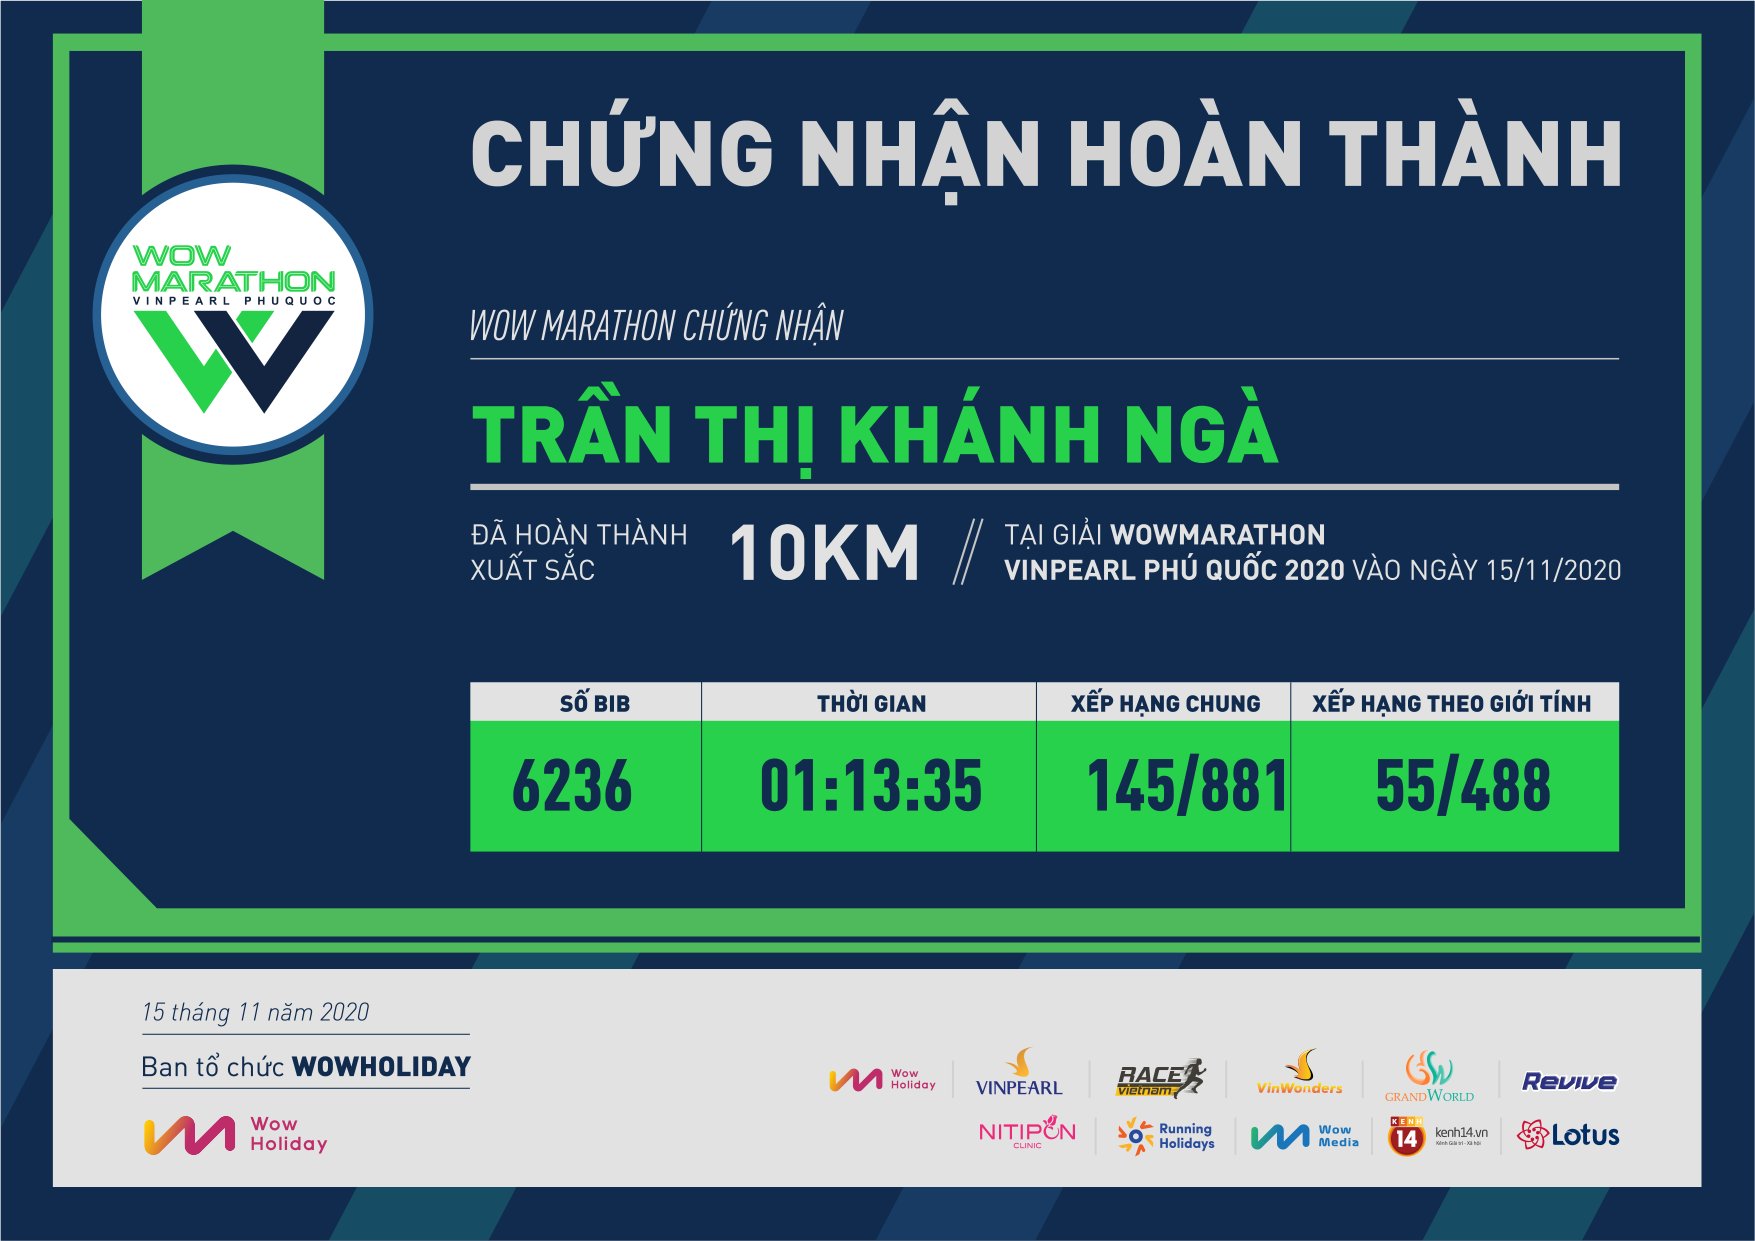 6236 - Trần Thị Khánh Ngà